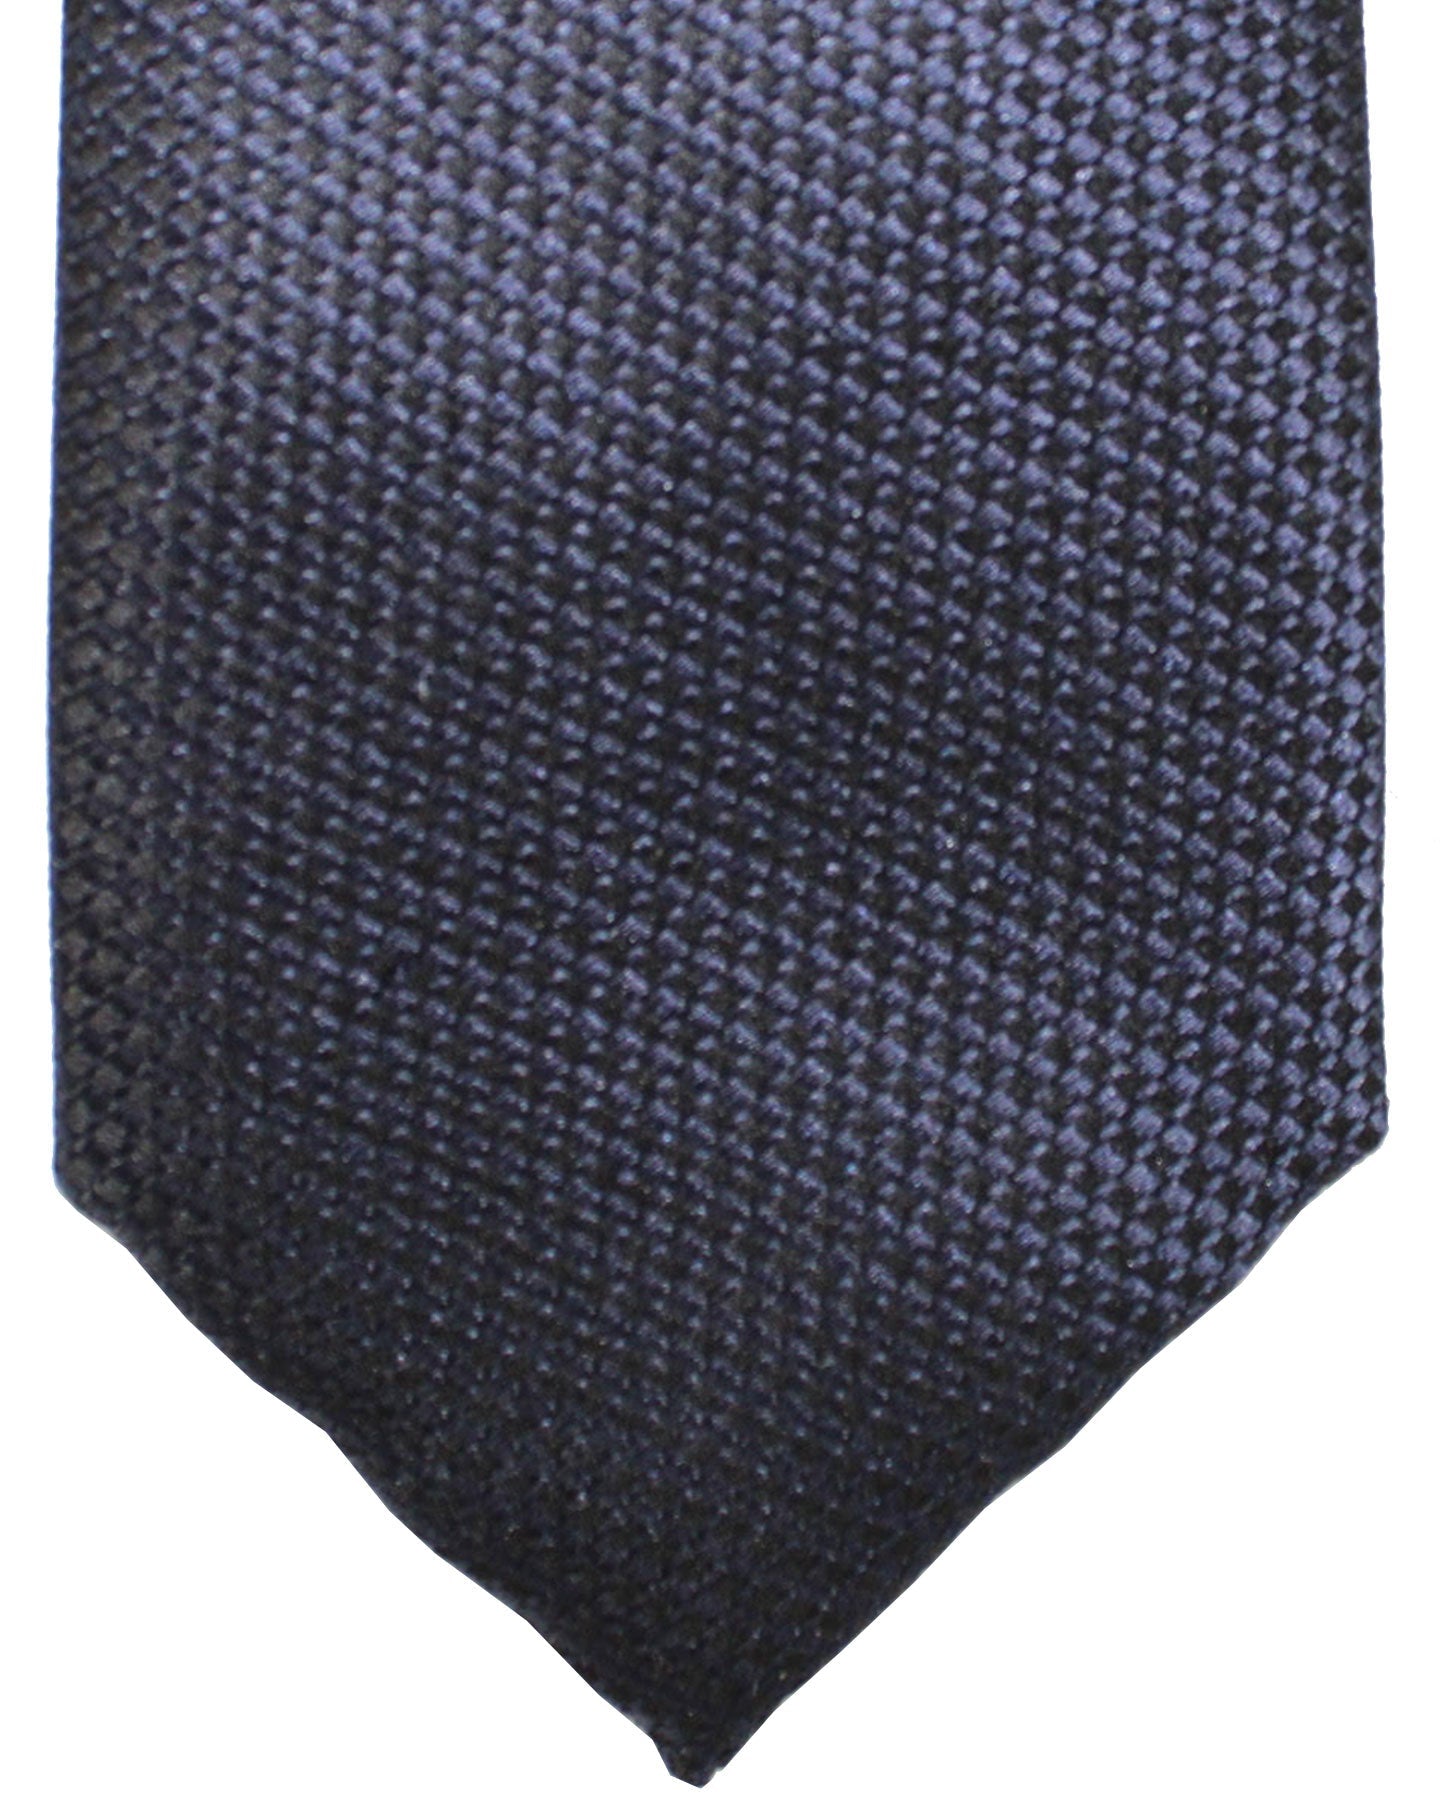 Canali Tie Black Midnight Blue Geometric